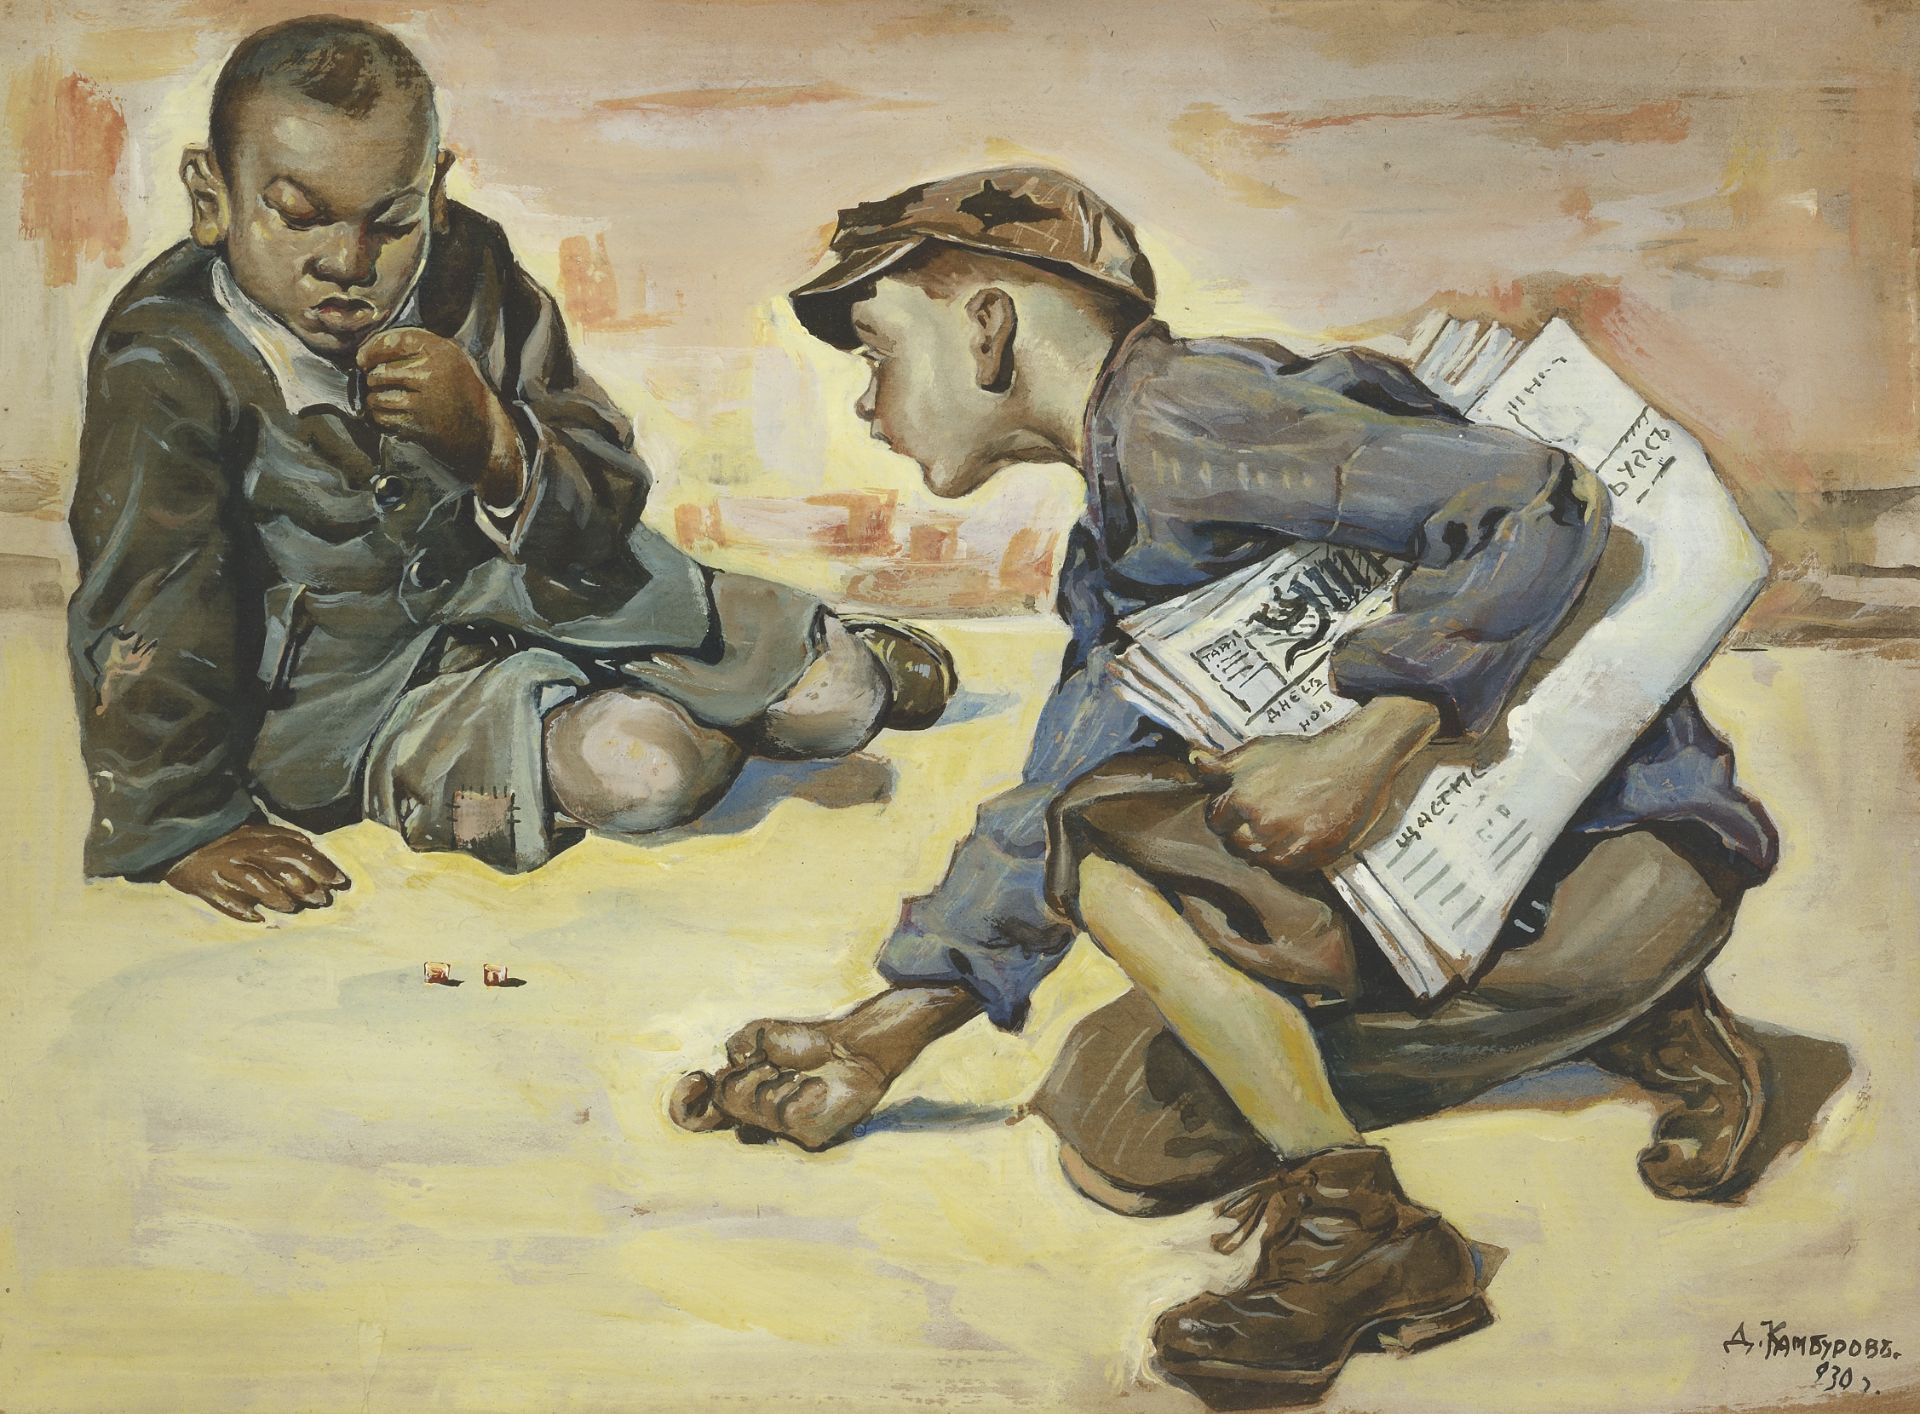 Dimitar Kamburov "Street Game" d.1930